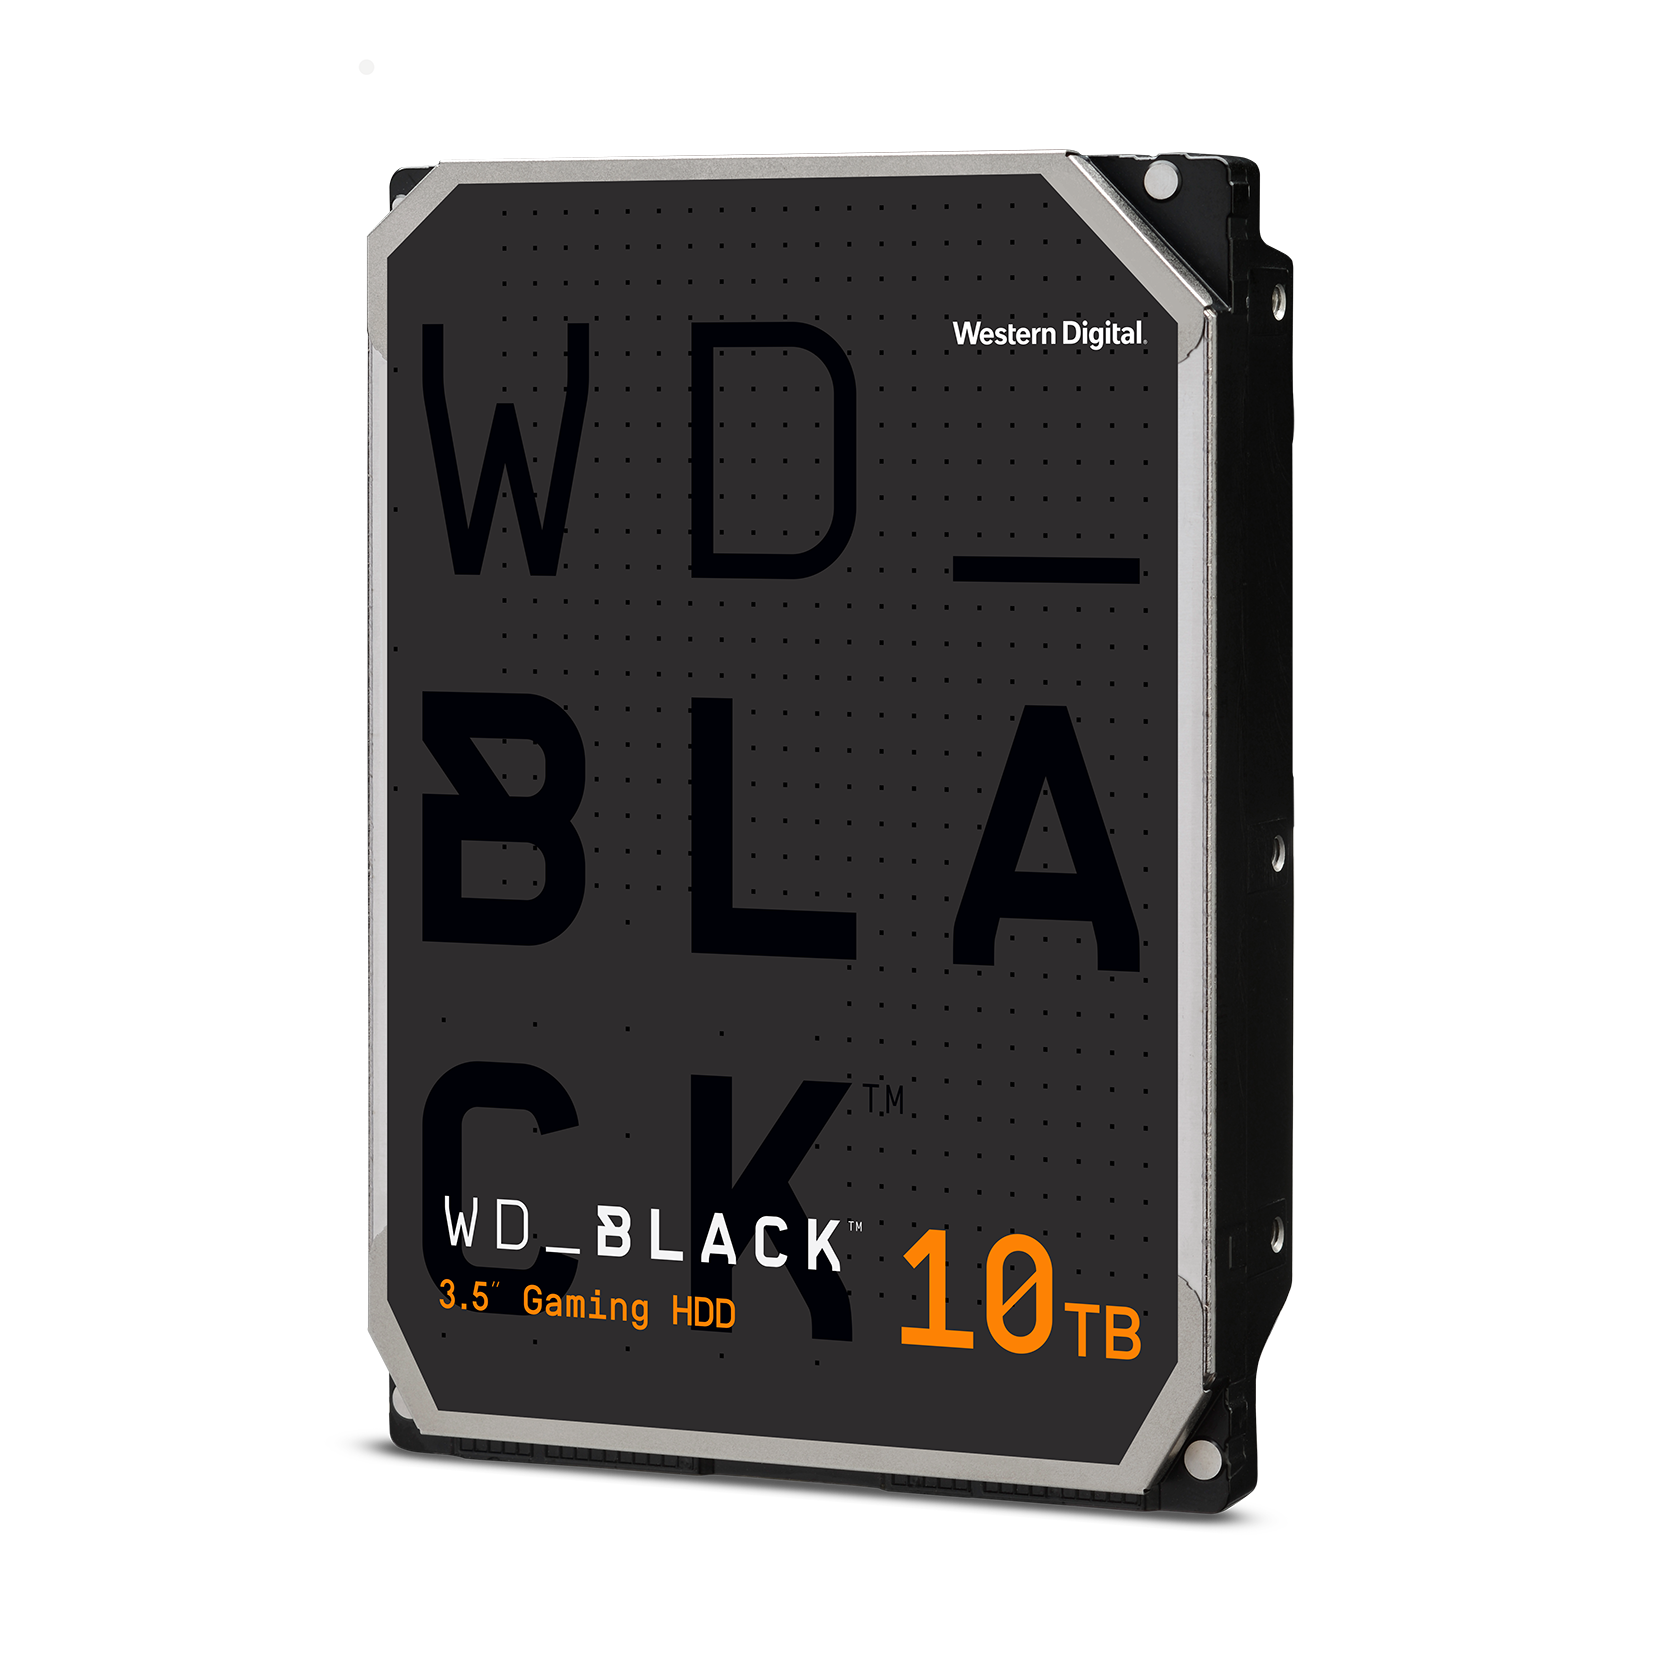 Verfijnen evalueren Nuttig WD_BLACK™ Best HDD Gaming Hard Drive | Western Digital